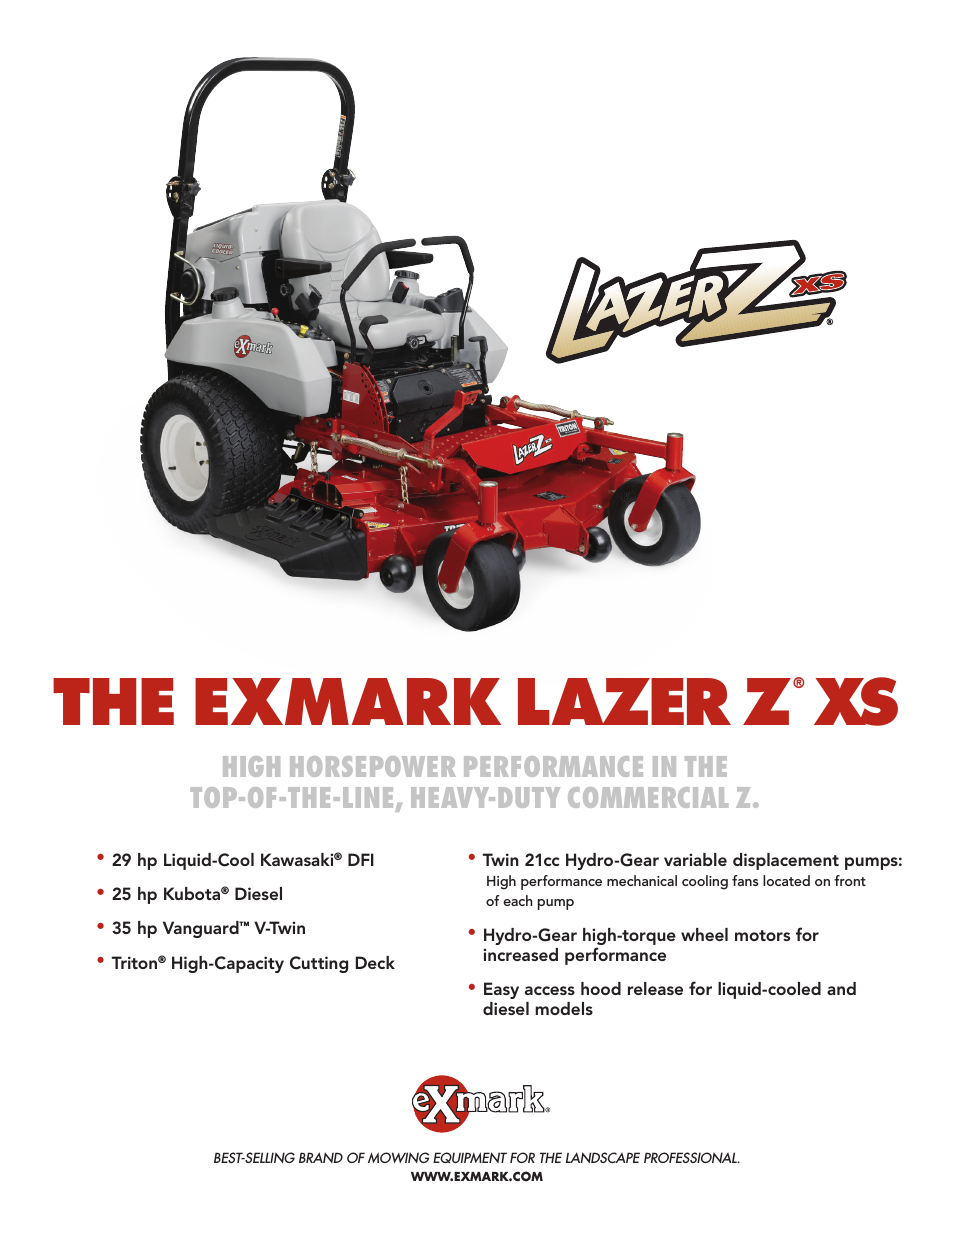 Lazer Z XS lXs25Kd605